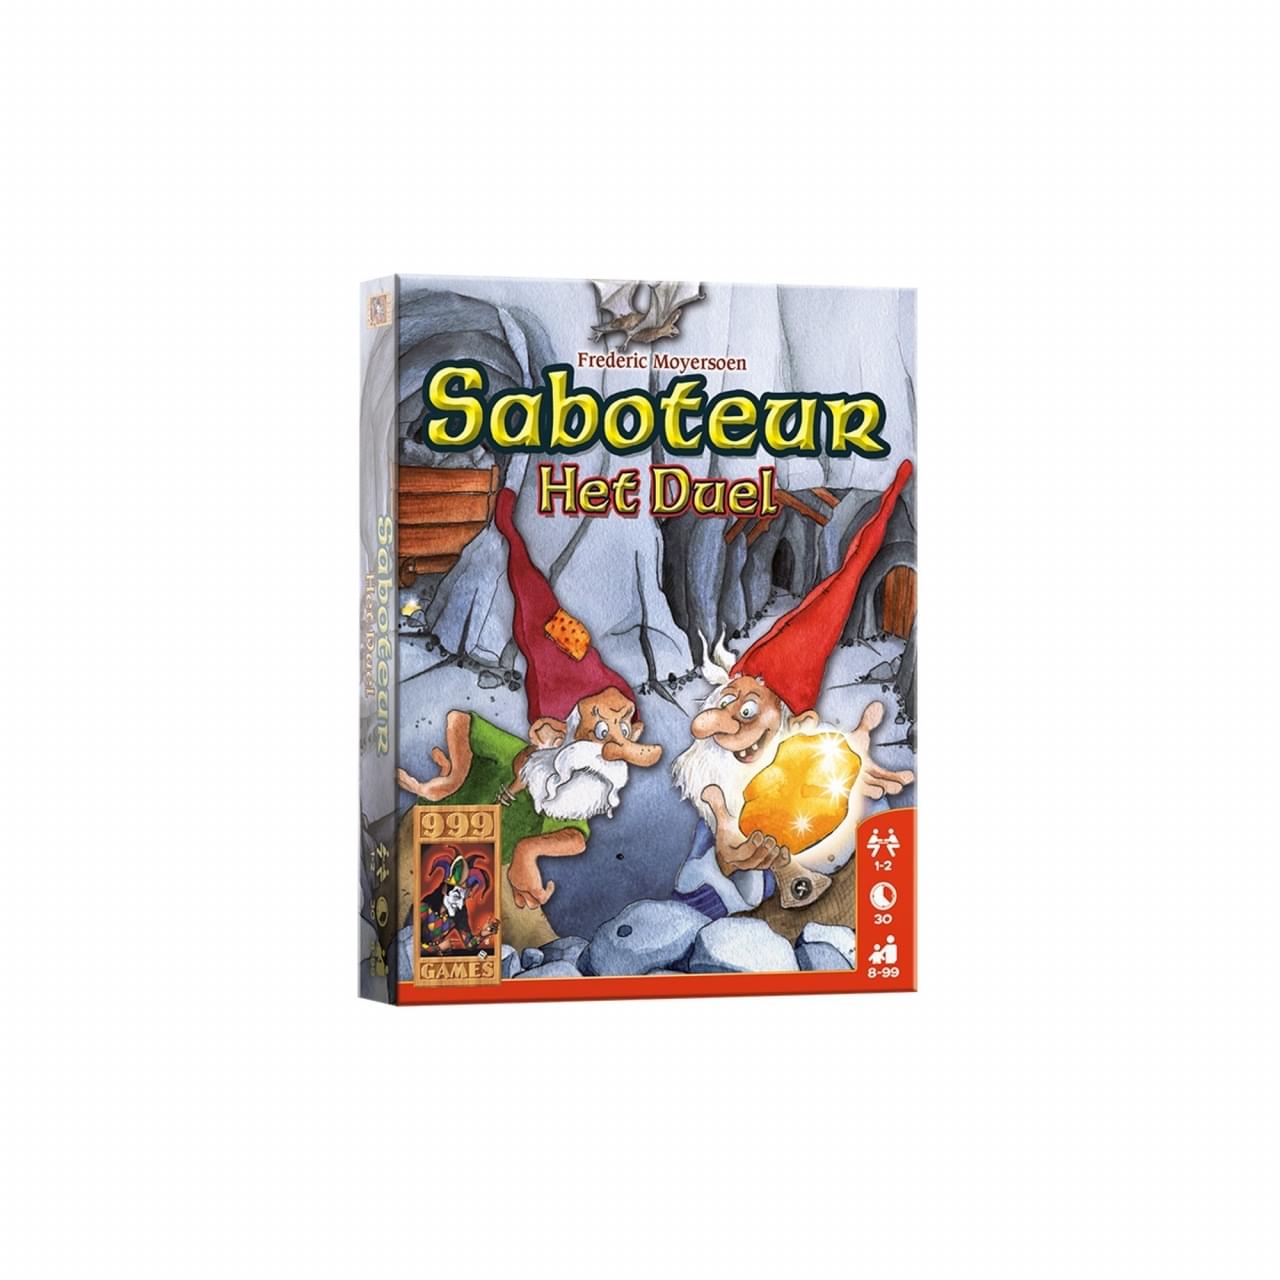 999 Games Saboteur: Het Duel